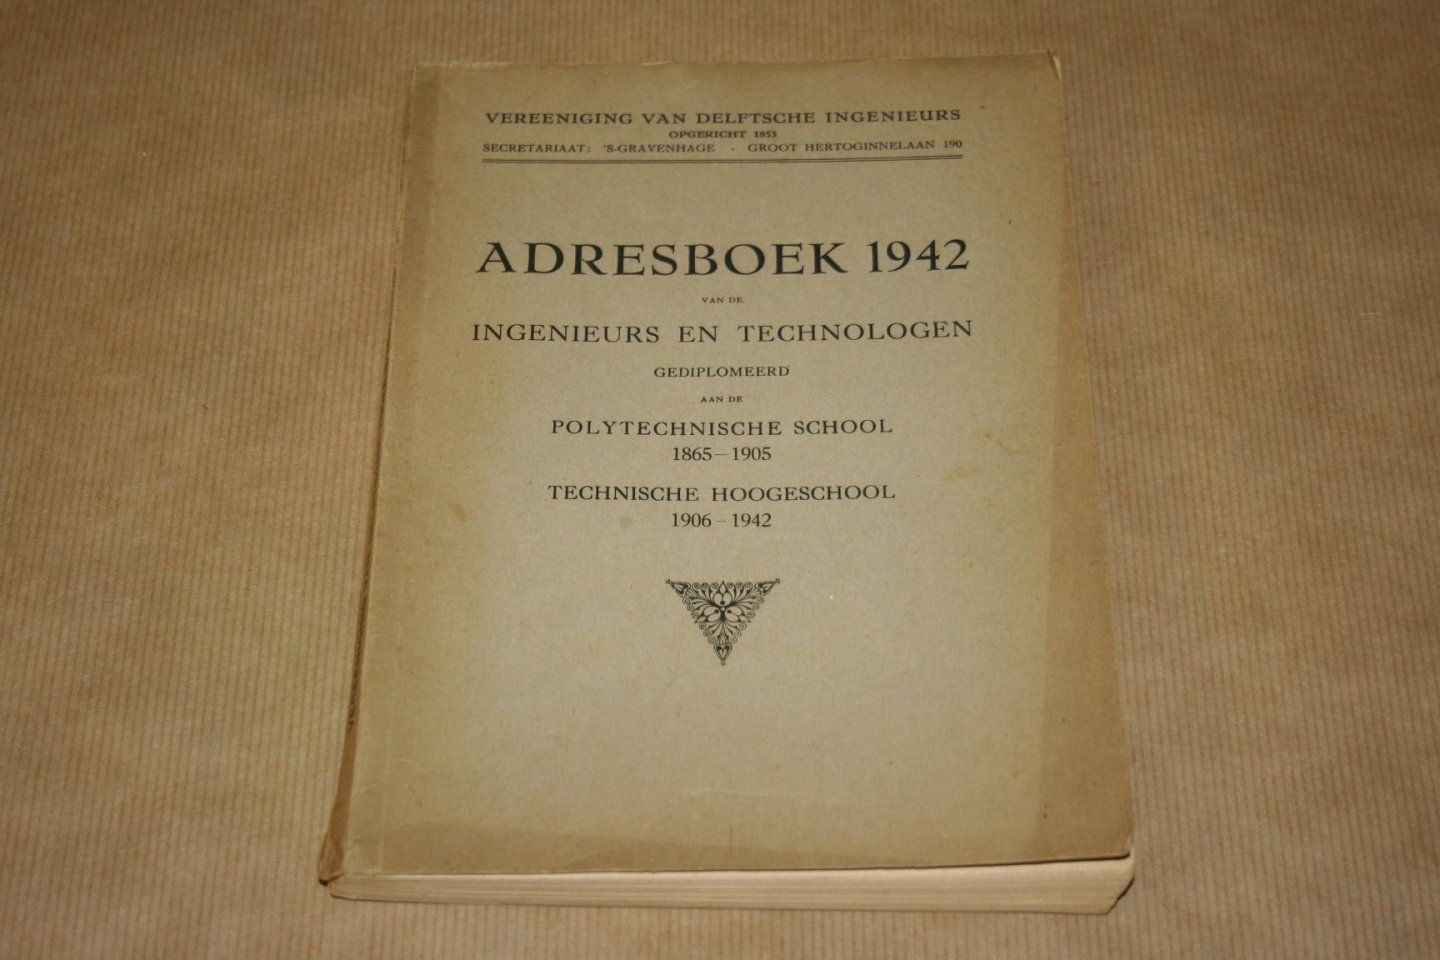  - Adresboek 1942 -  van de Ingenieurs en Technologen  gediplomeerd aan de Polytechnische School & de Technische Hoogeschool